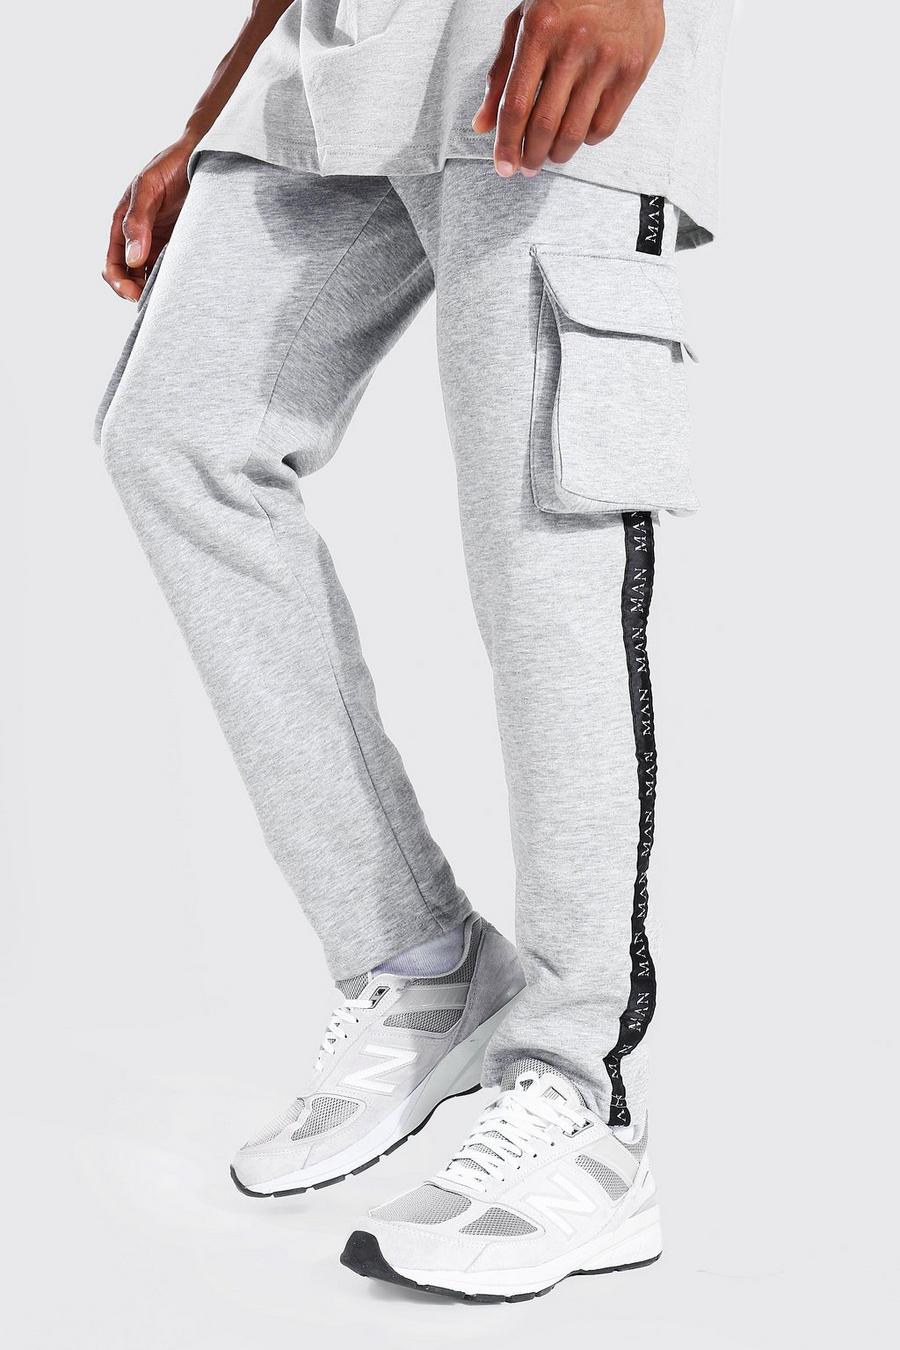 סלע אפור מכנסי ריצה בגזרה צרה בסגנון דגמ"ח עם סרט עם כיתוב Original Man image number 1